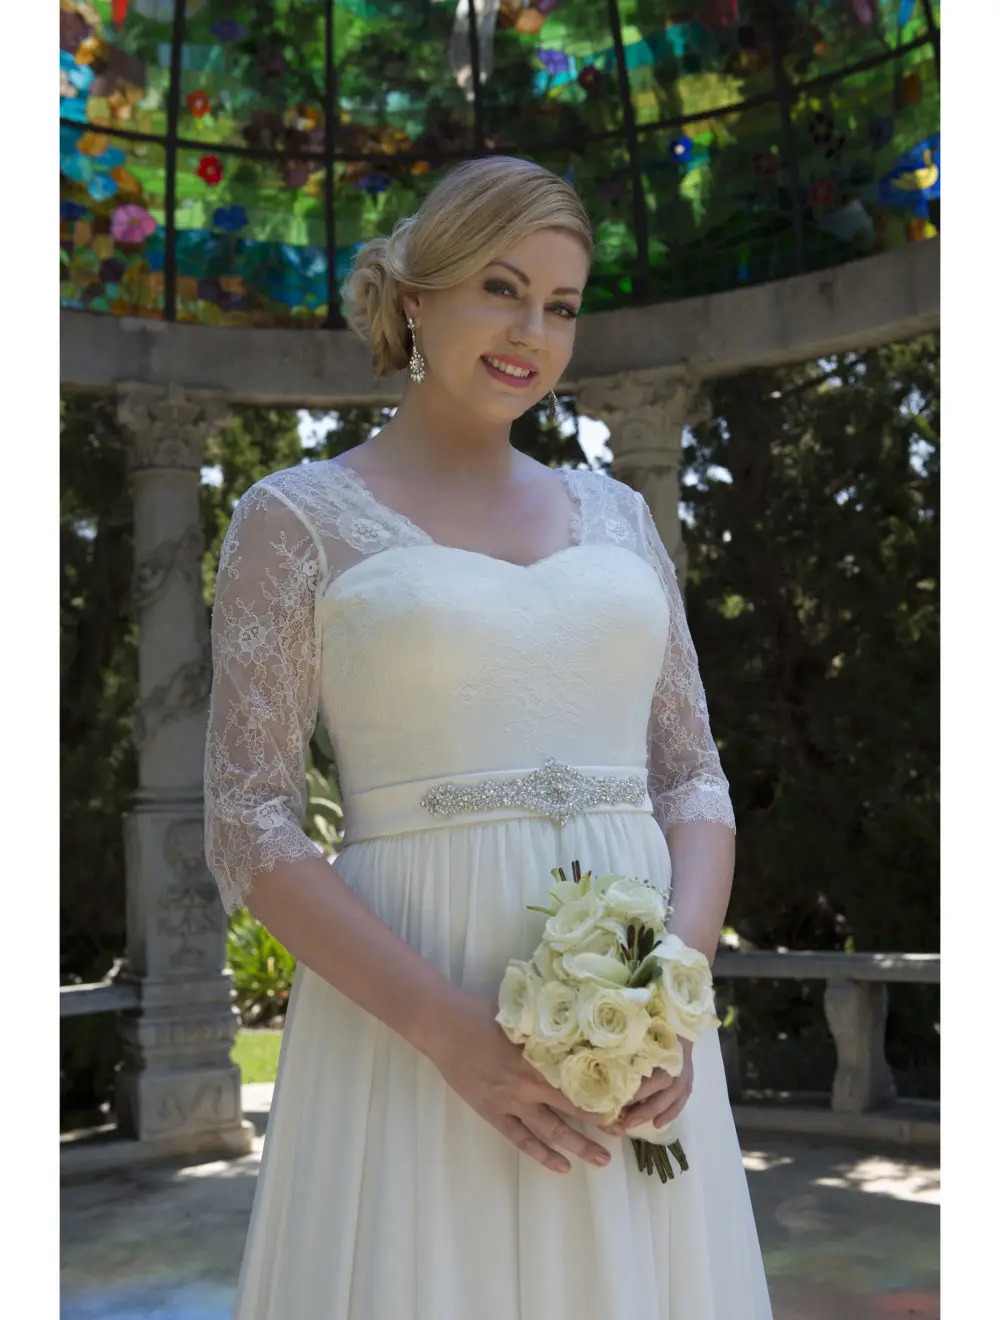 Неформальный скромный плюс размеры Свадебные платья с 3/4 рукава 2019 большой кружево шифон приём Свадебные в стиле кантри Вестерн